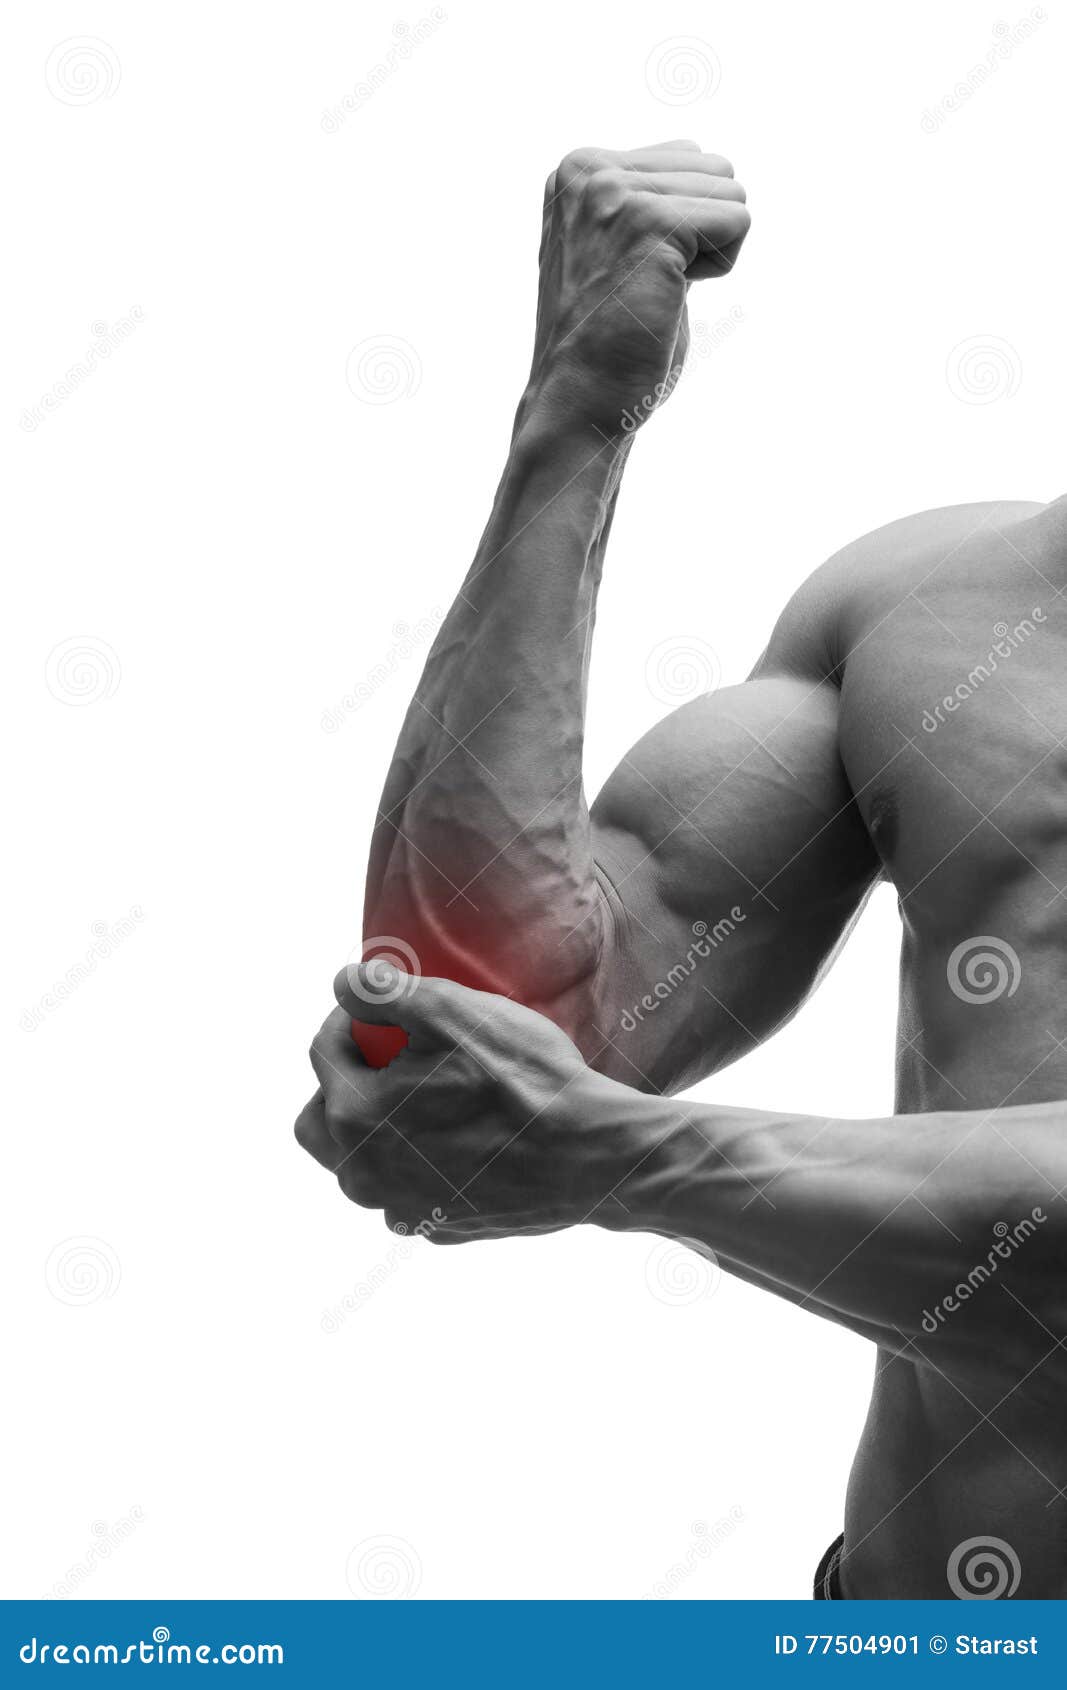 痛苦在手肘 肌肉男性身体 隔绝在与红色小点的白色背景库存图片 图片包括有